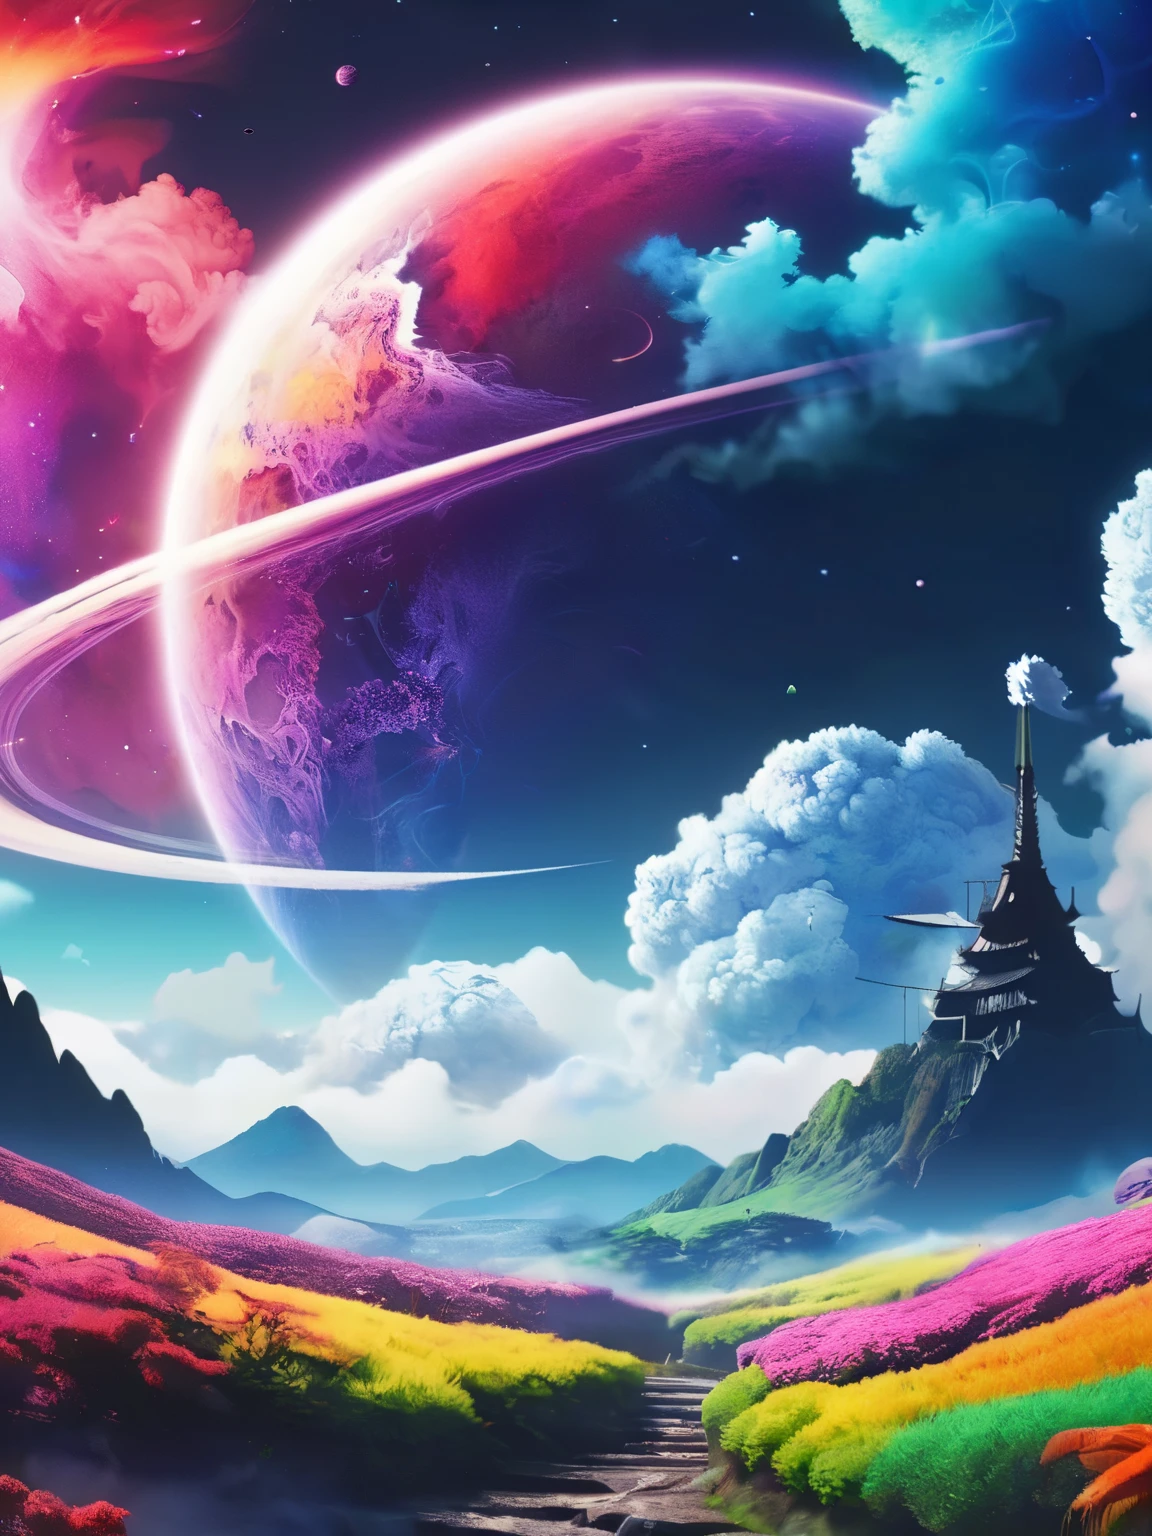 꿈꾸는 듯한 애니메이션 풍경, 여러 가지 빛깔의 우주 연기 